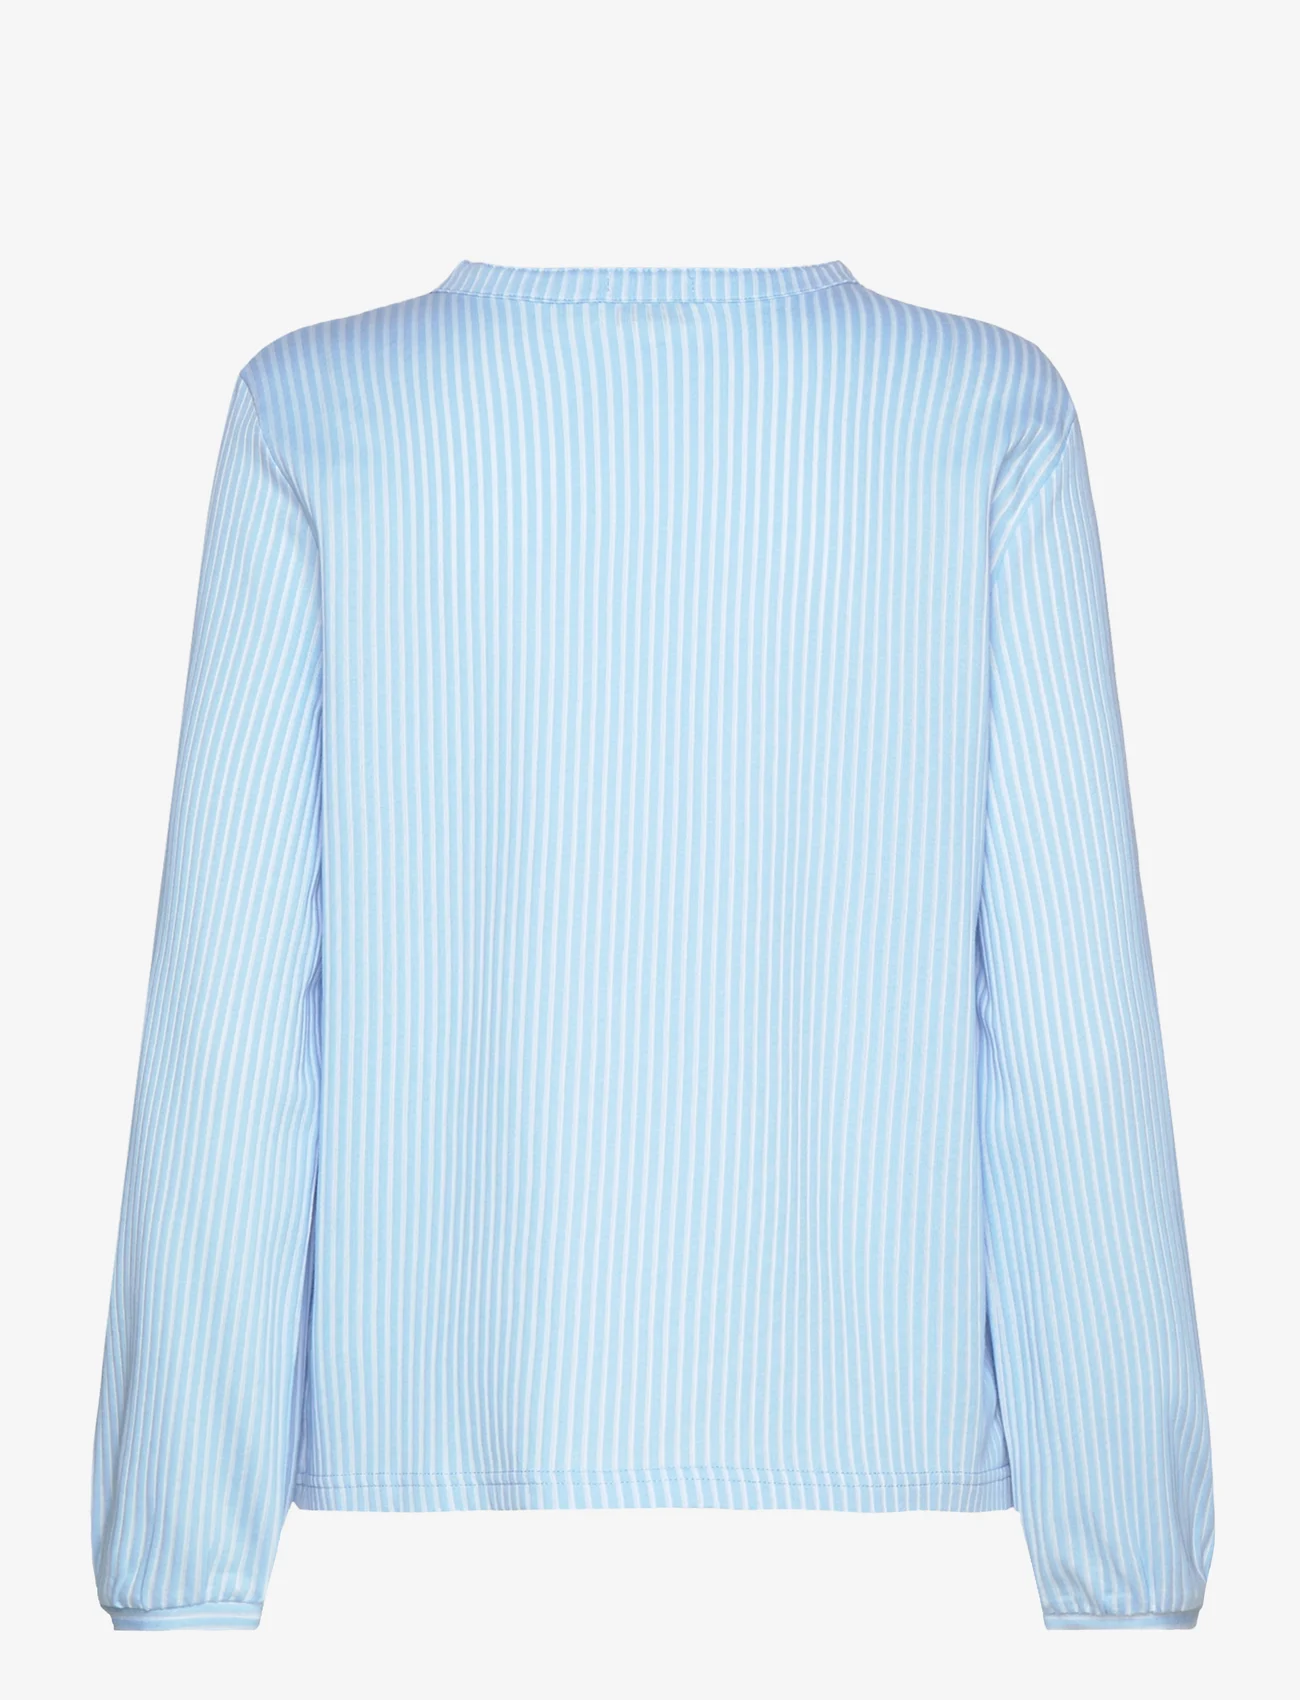 Tom Tailor - T-shirt blouse vertical stripe - langermede bluser - blue white thin stripe - 1